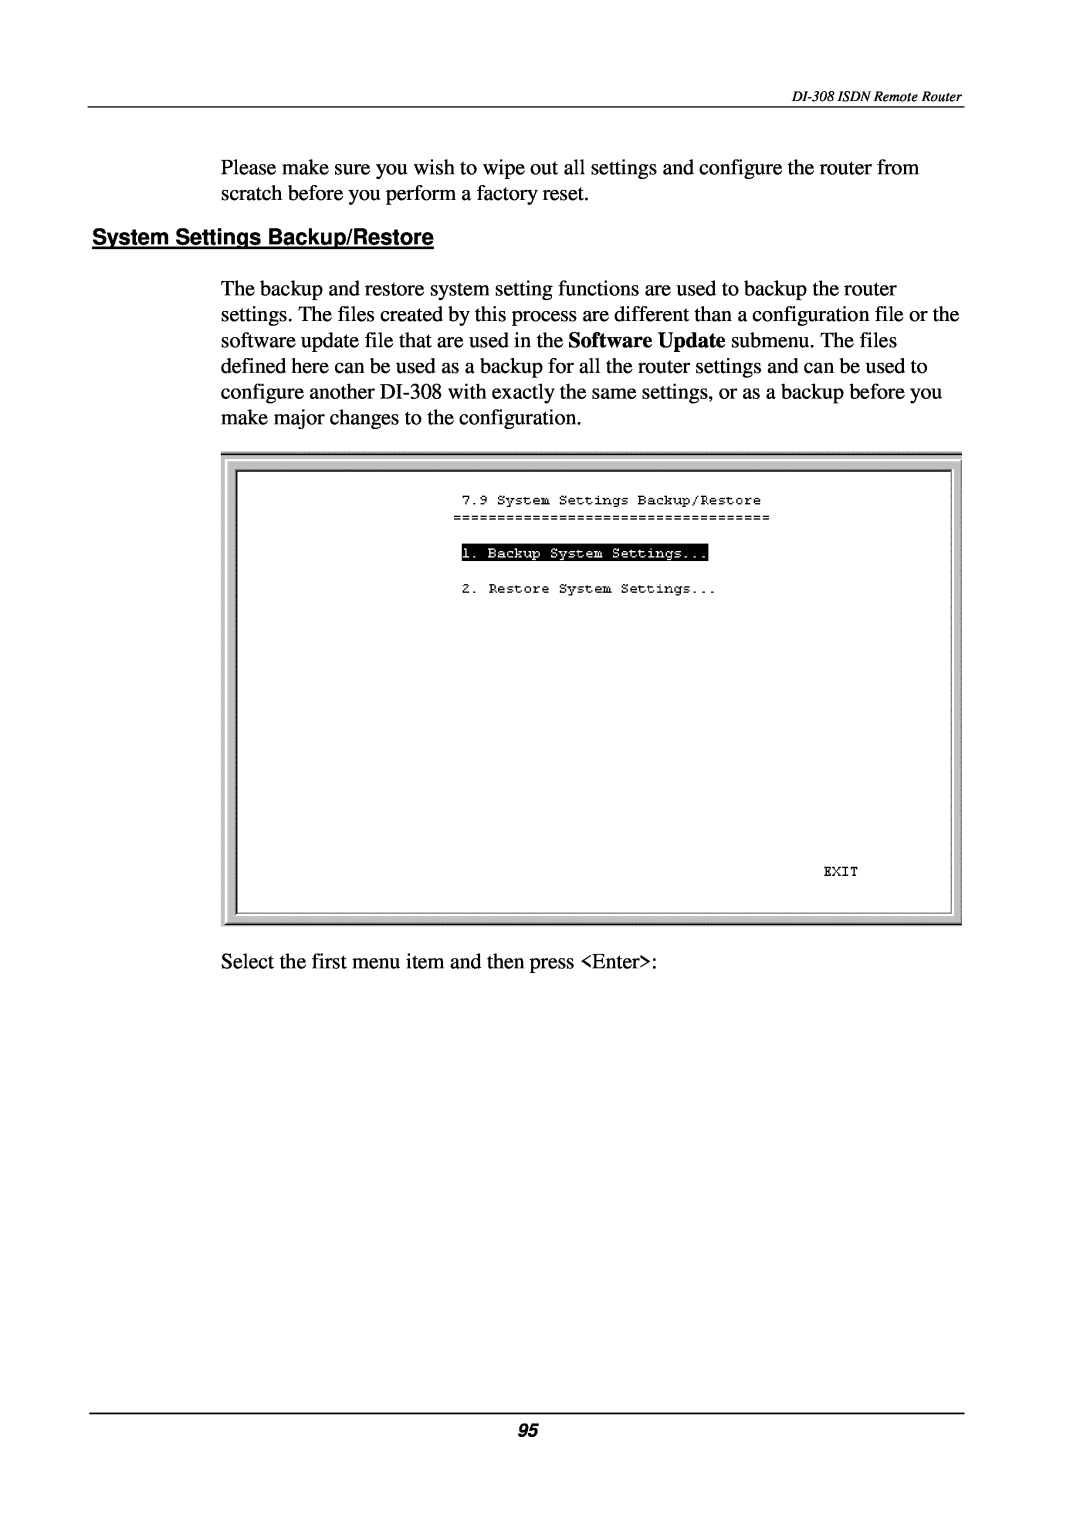 D-Link DI-308 manual System Settings Backup/Restore 